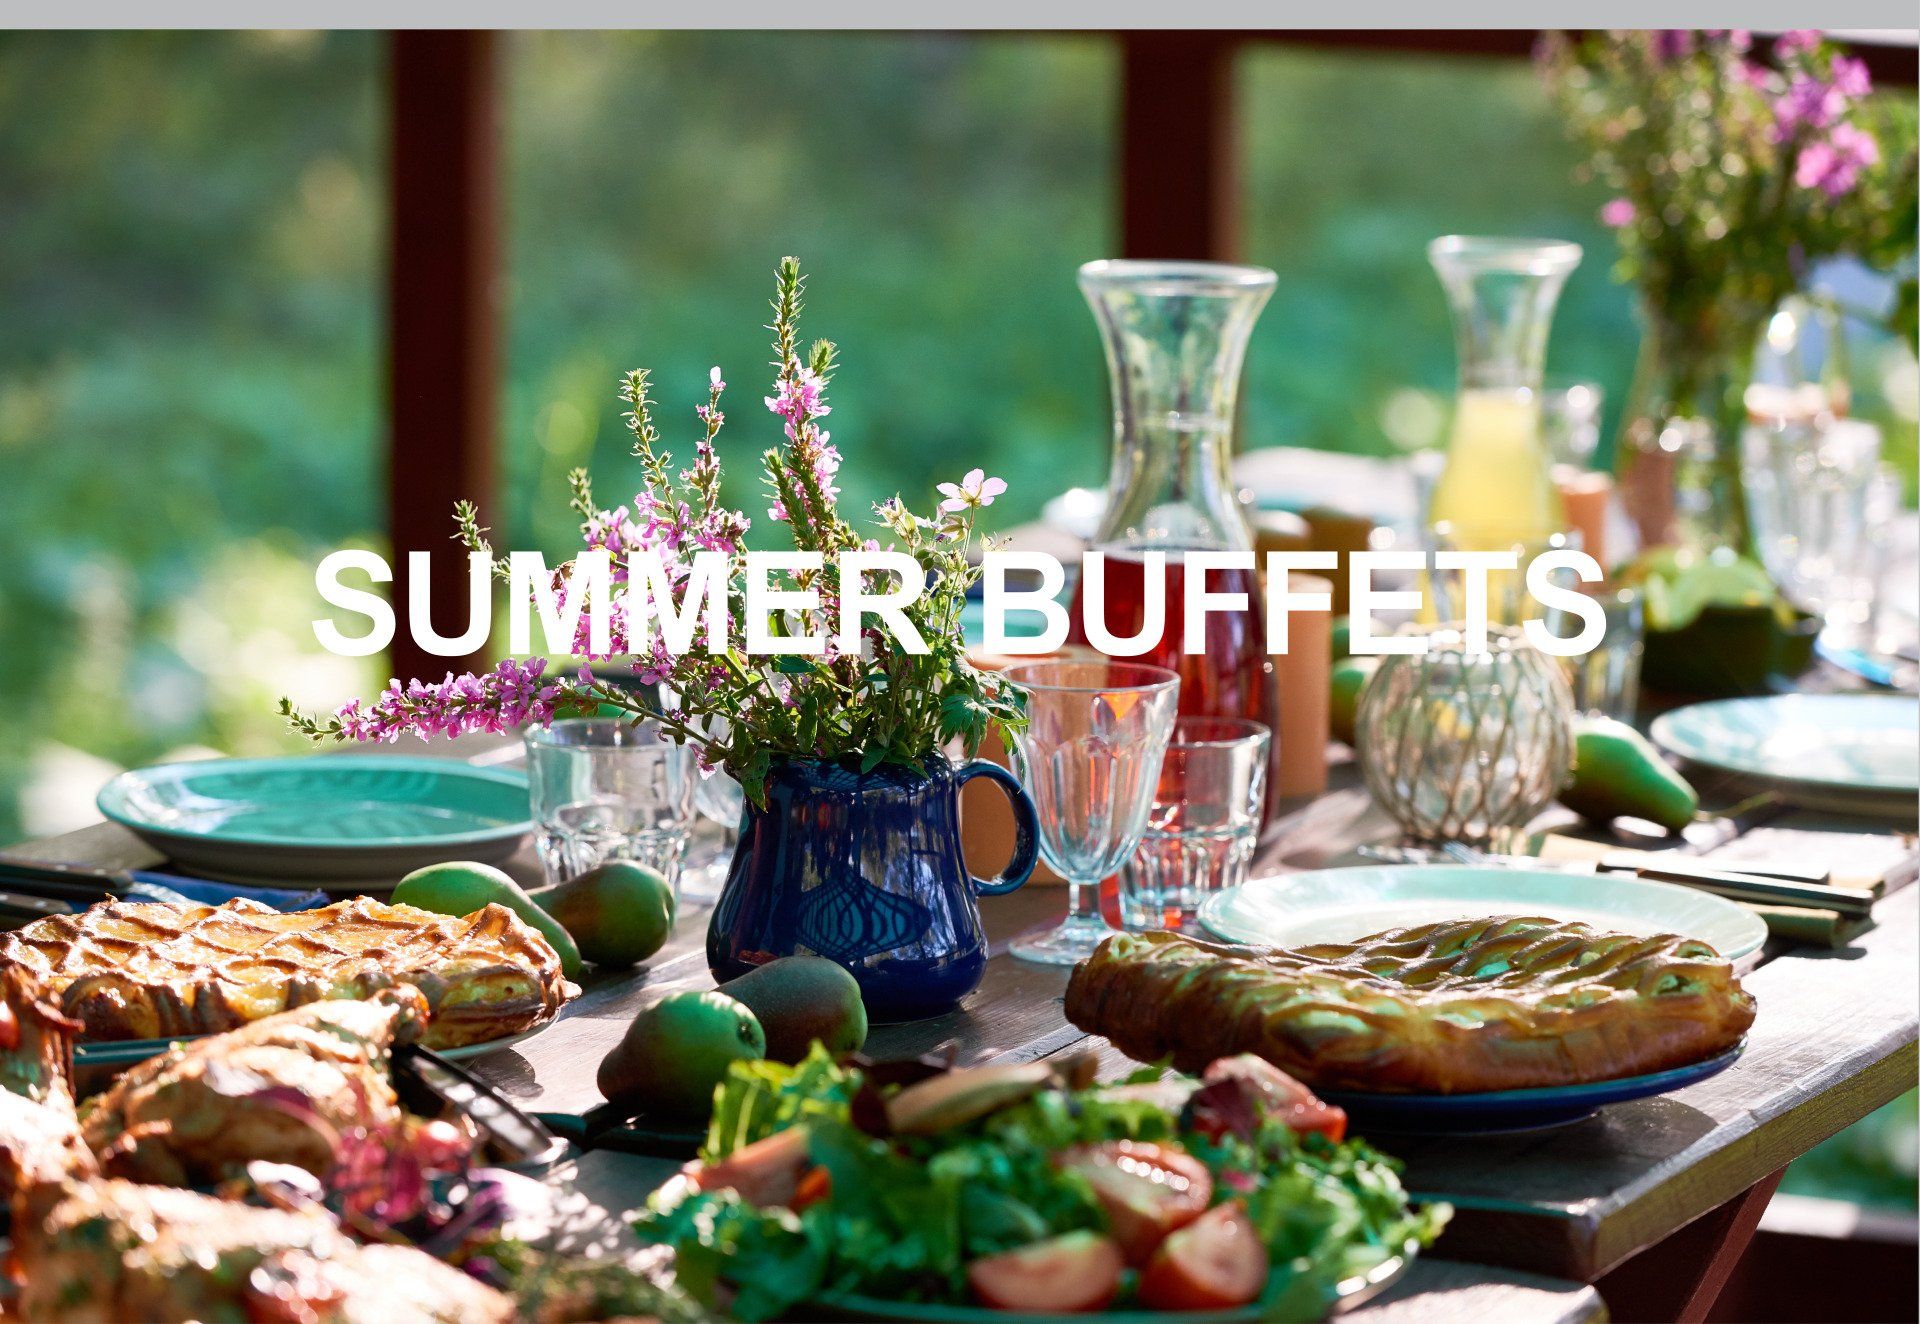 Summer buffets